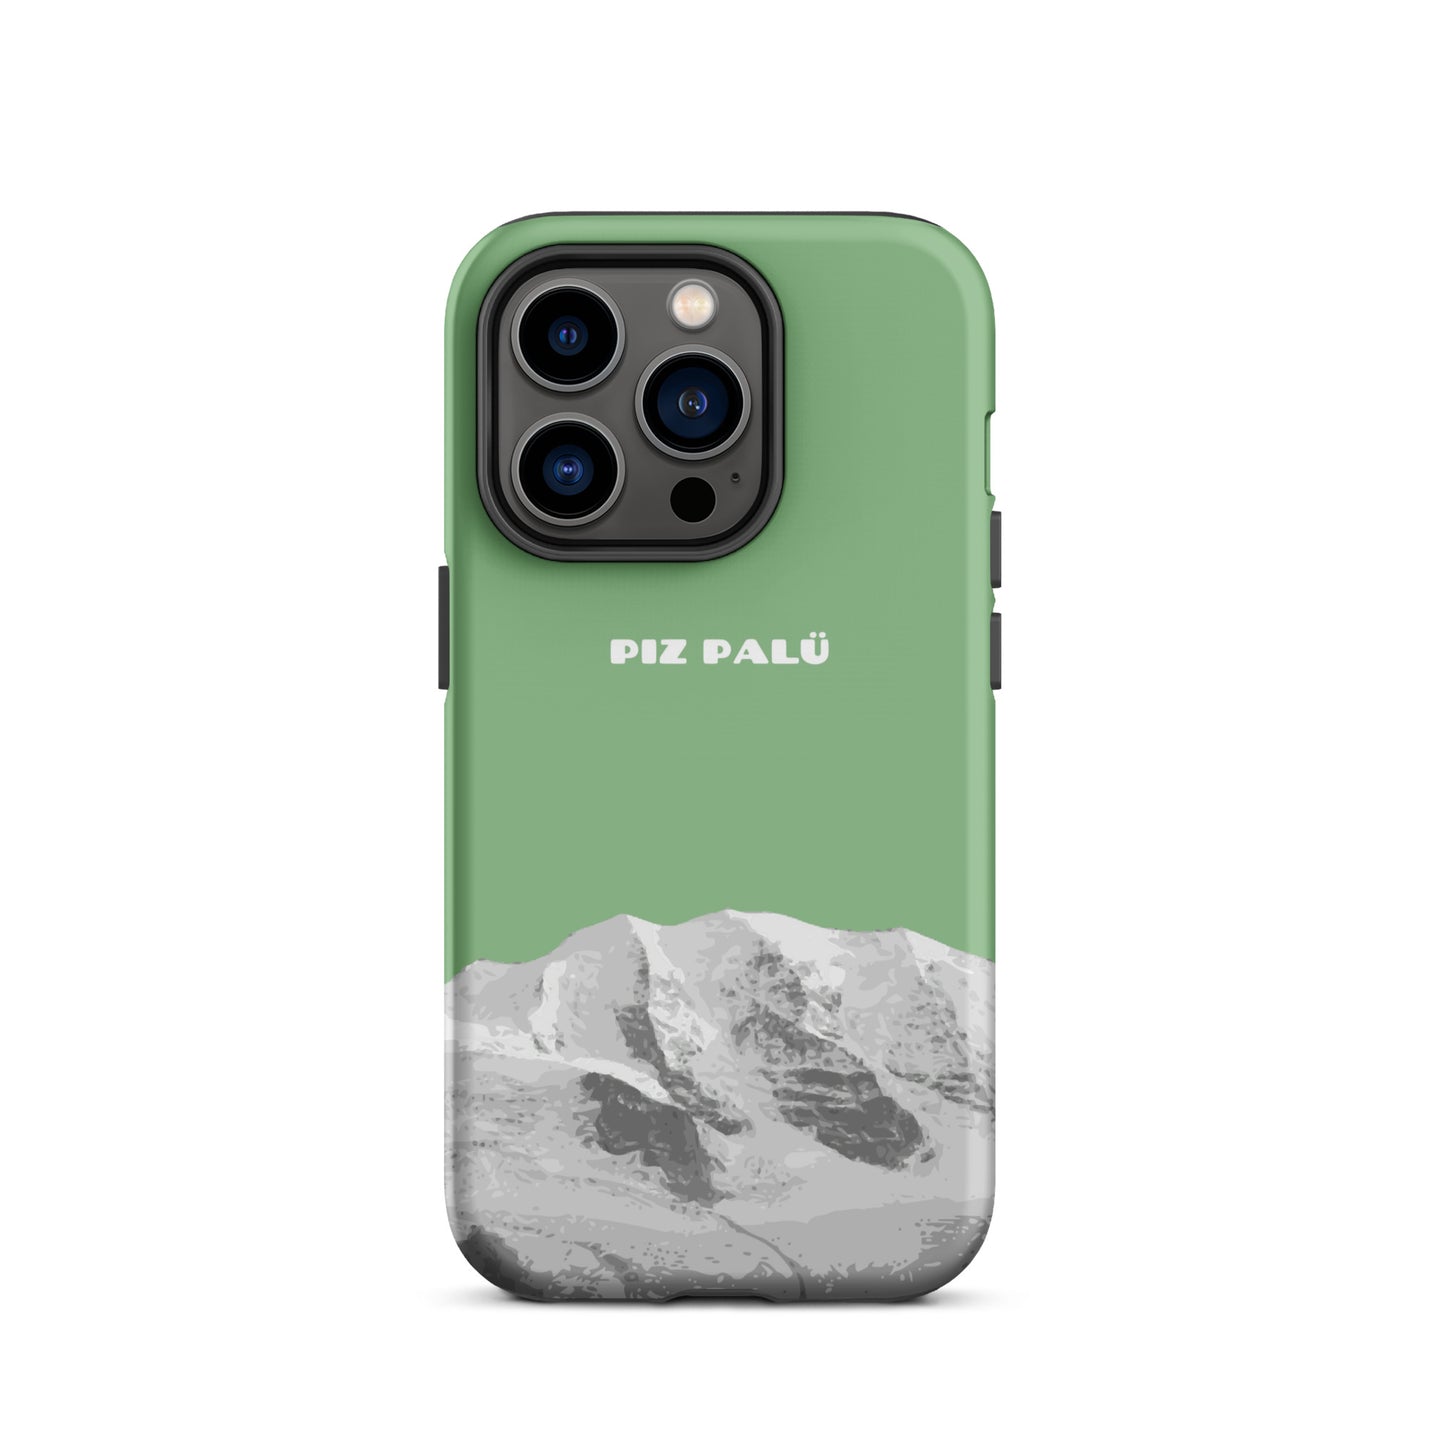 Hülle für das iPhone 14 Pro von Apple in der Farbe Hellgrün, dass den Piz Palü in Graubünden zeigt.